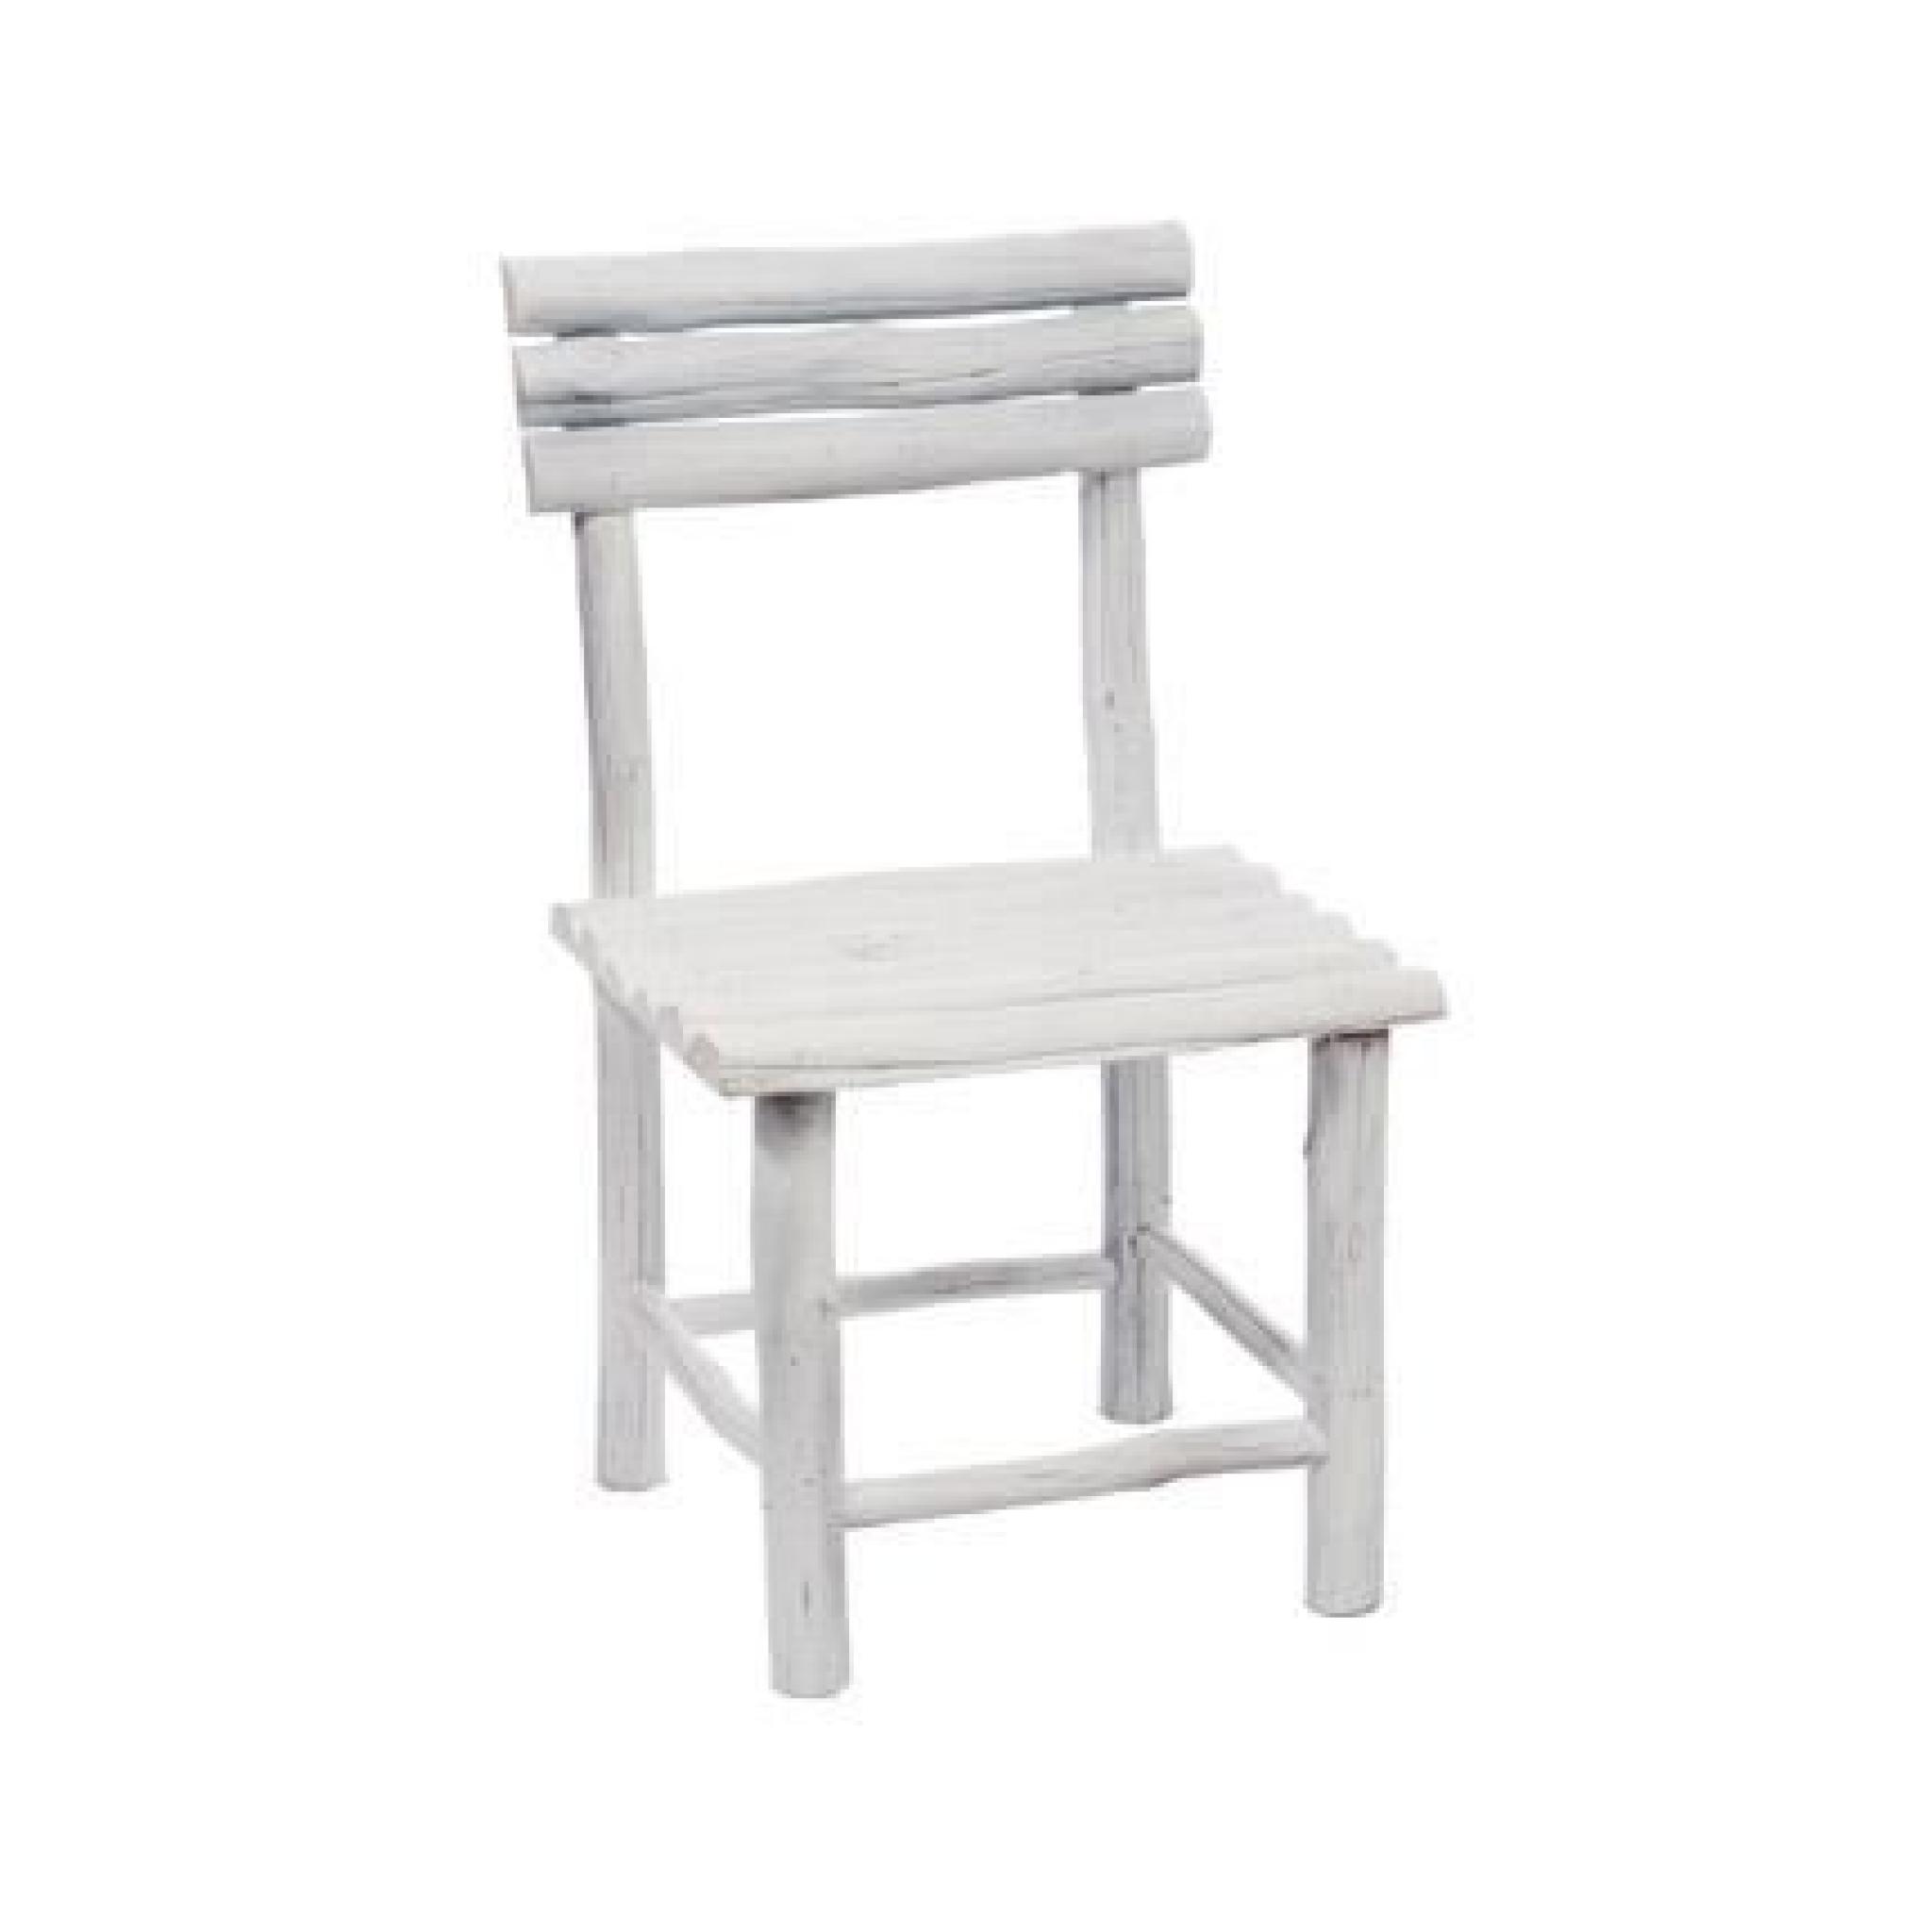 Grande chaise bois - coloris blanc